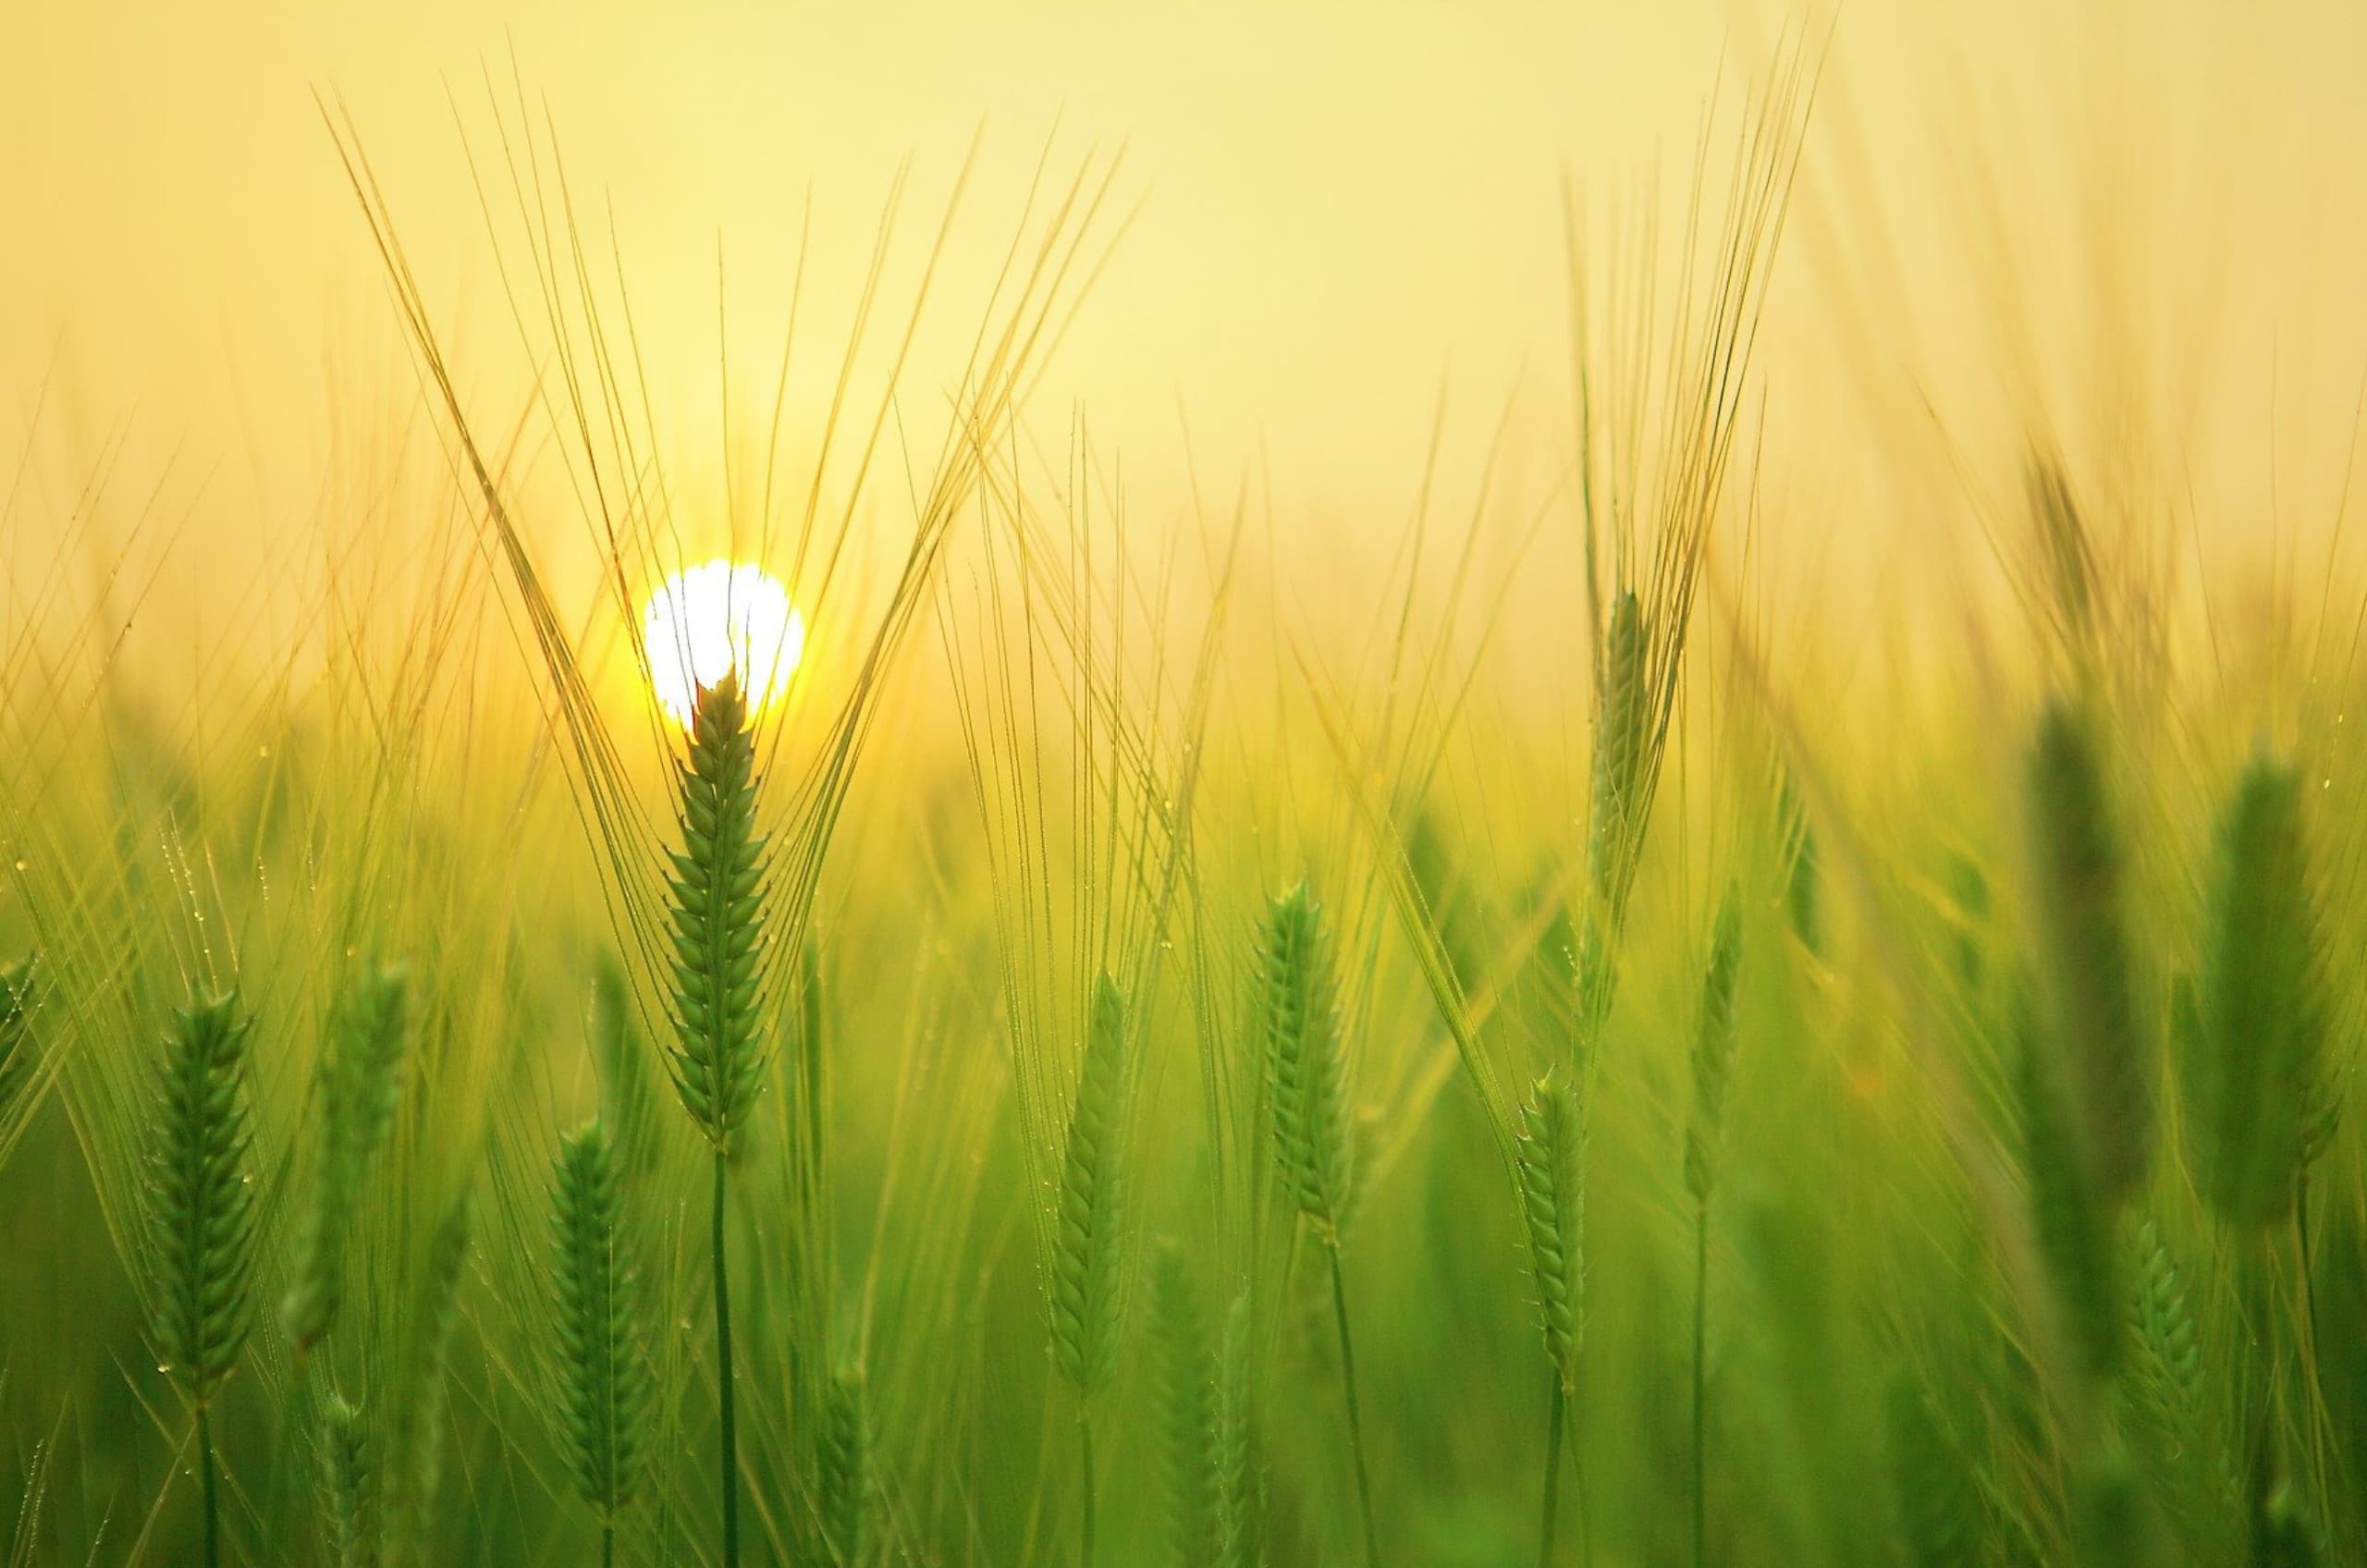 Sonne am Weizenfeld richtig fotografieren um deine Nachhaltigkeit in Fotos glaubwürdig zu machen.